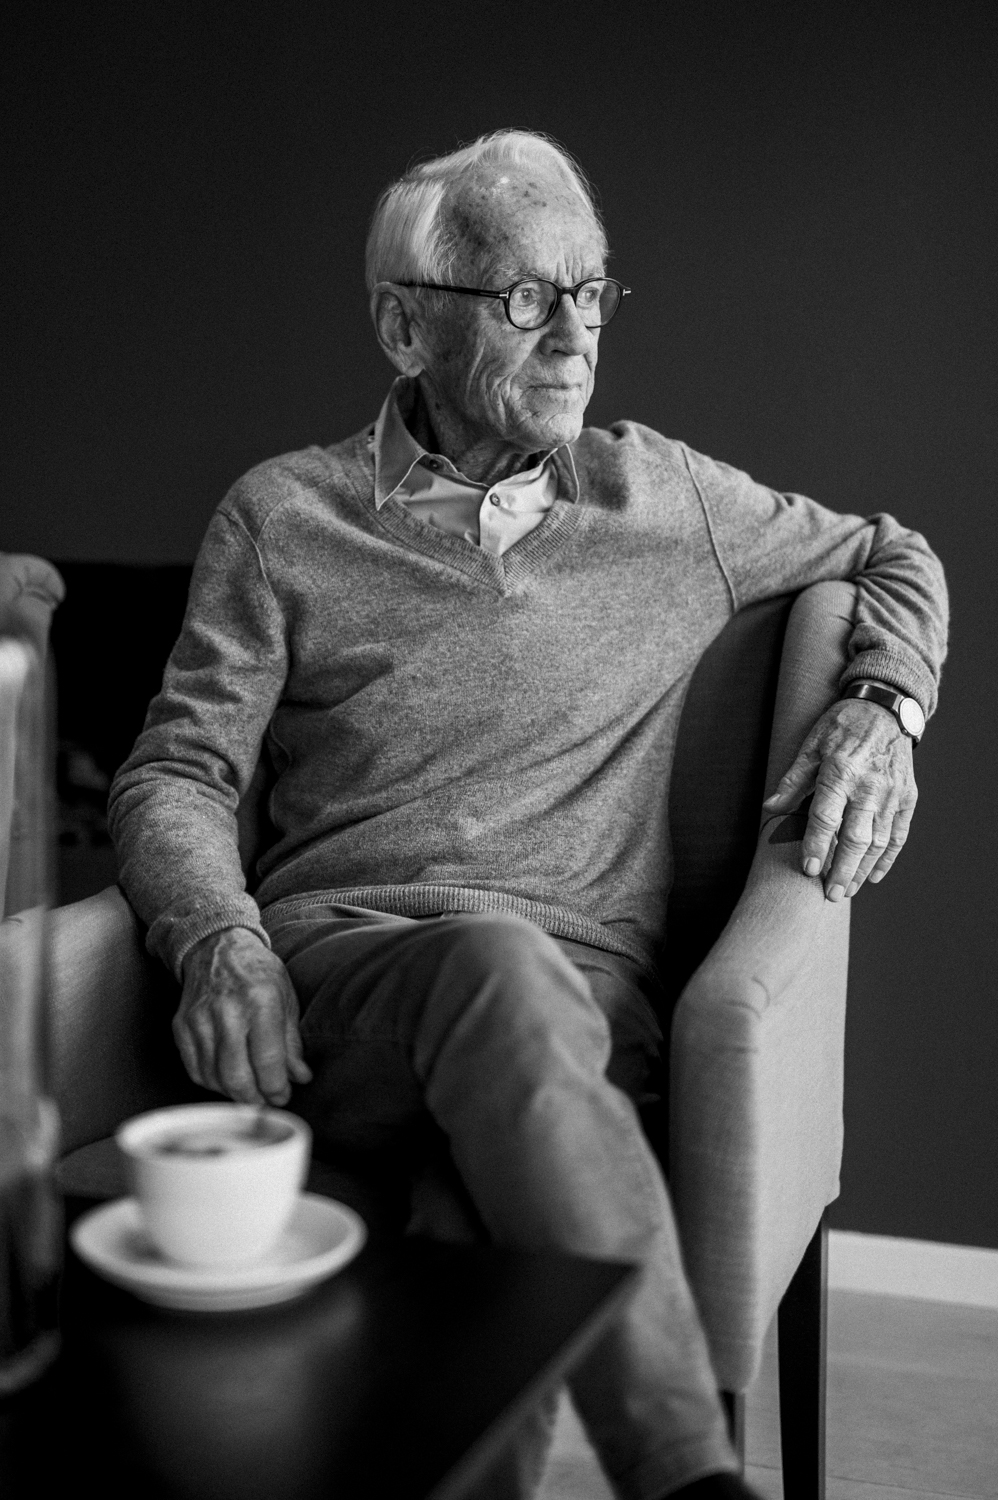  Bent Fabricius Bjerre 90 års portræt 